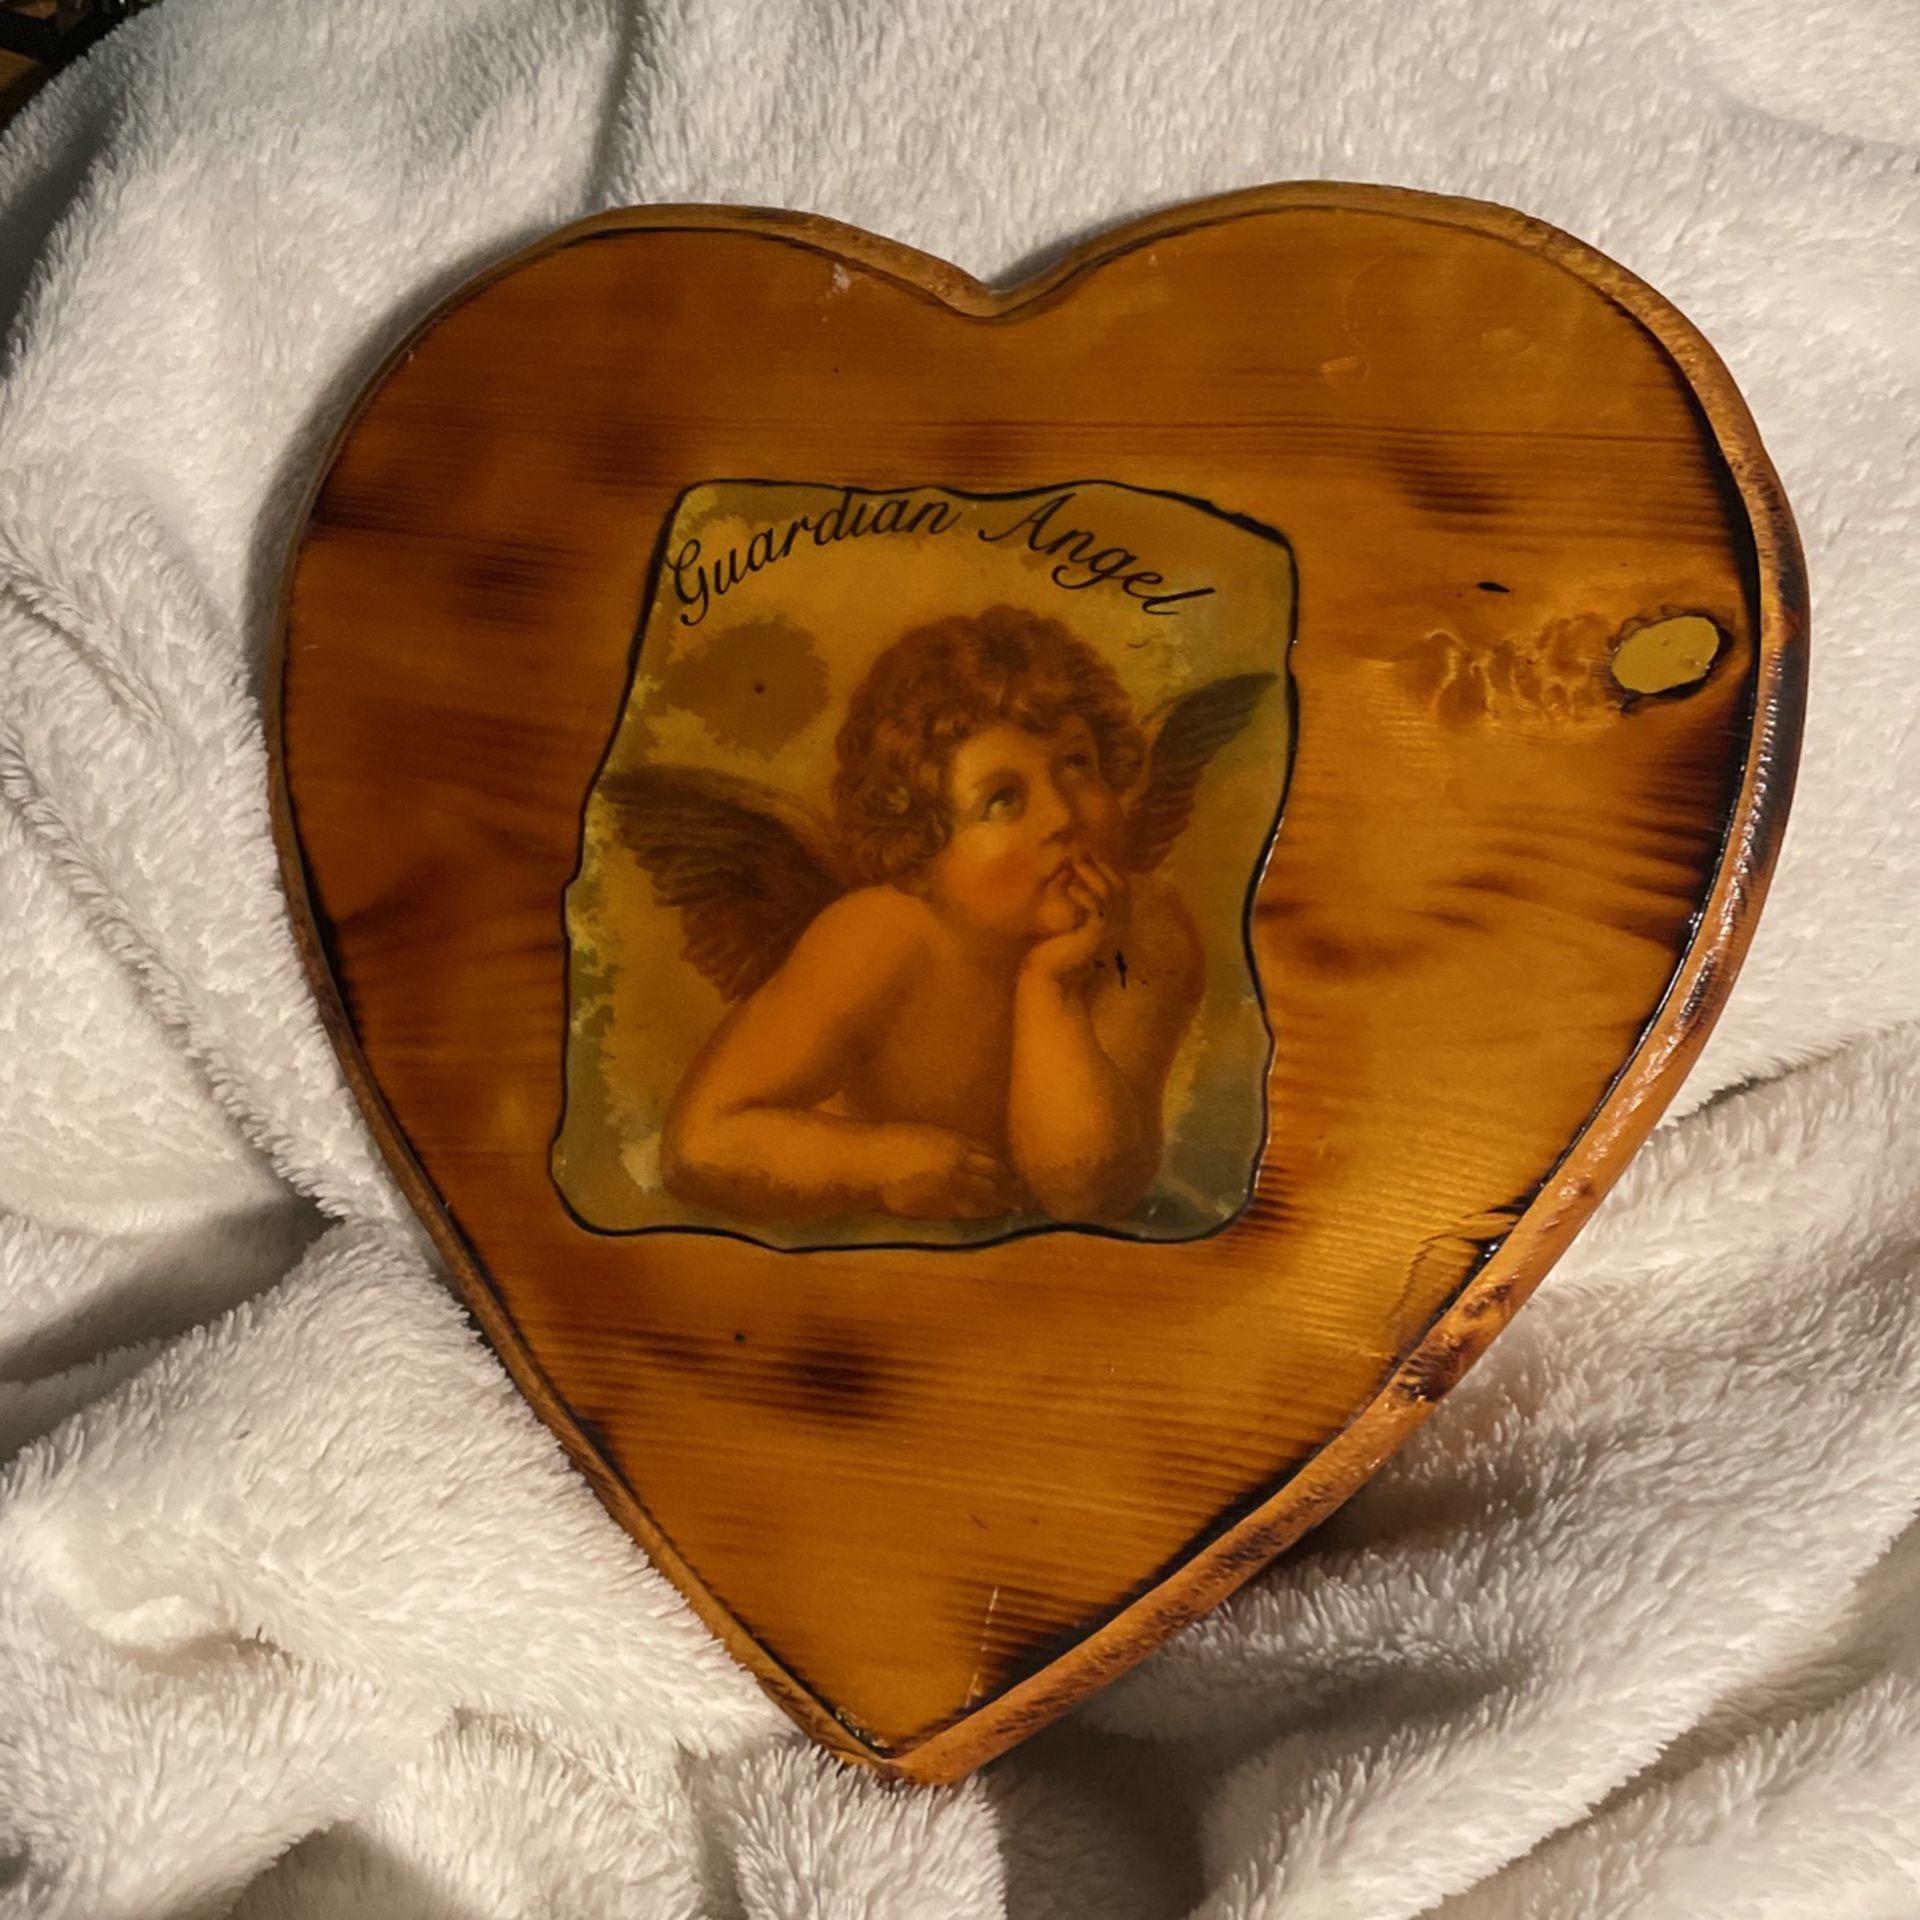 Guardian Angel Heart Plaque